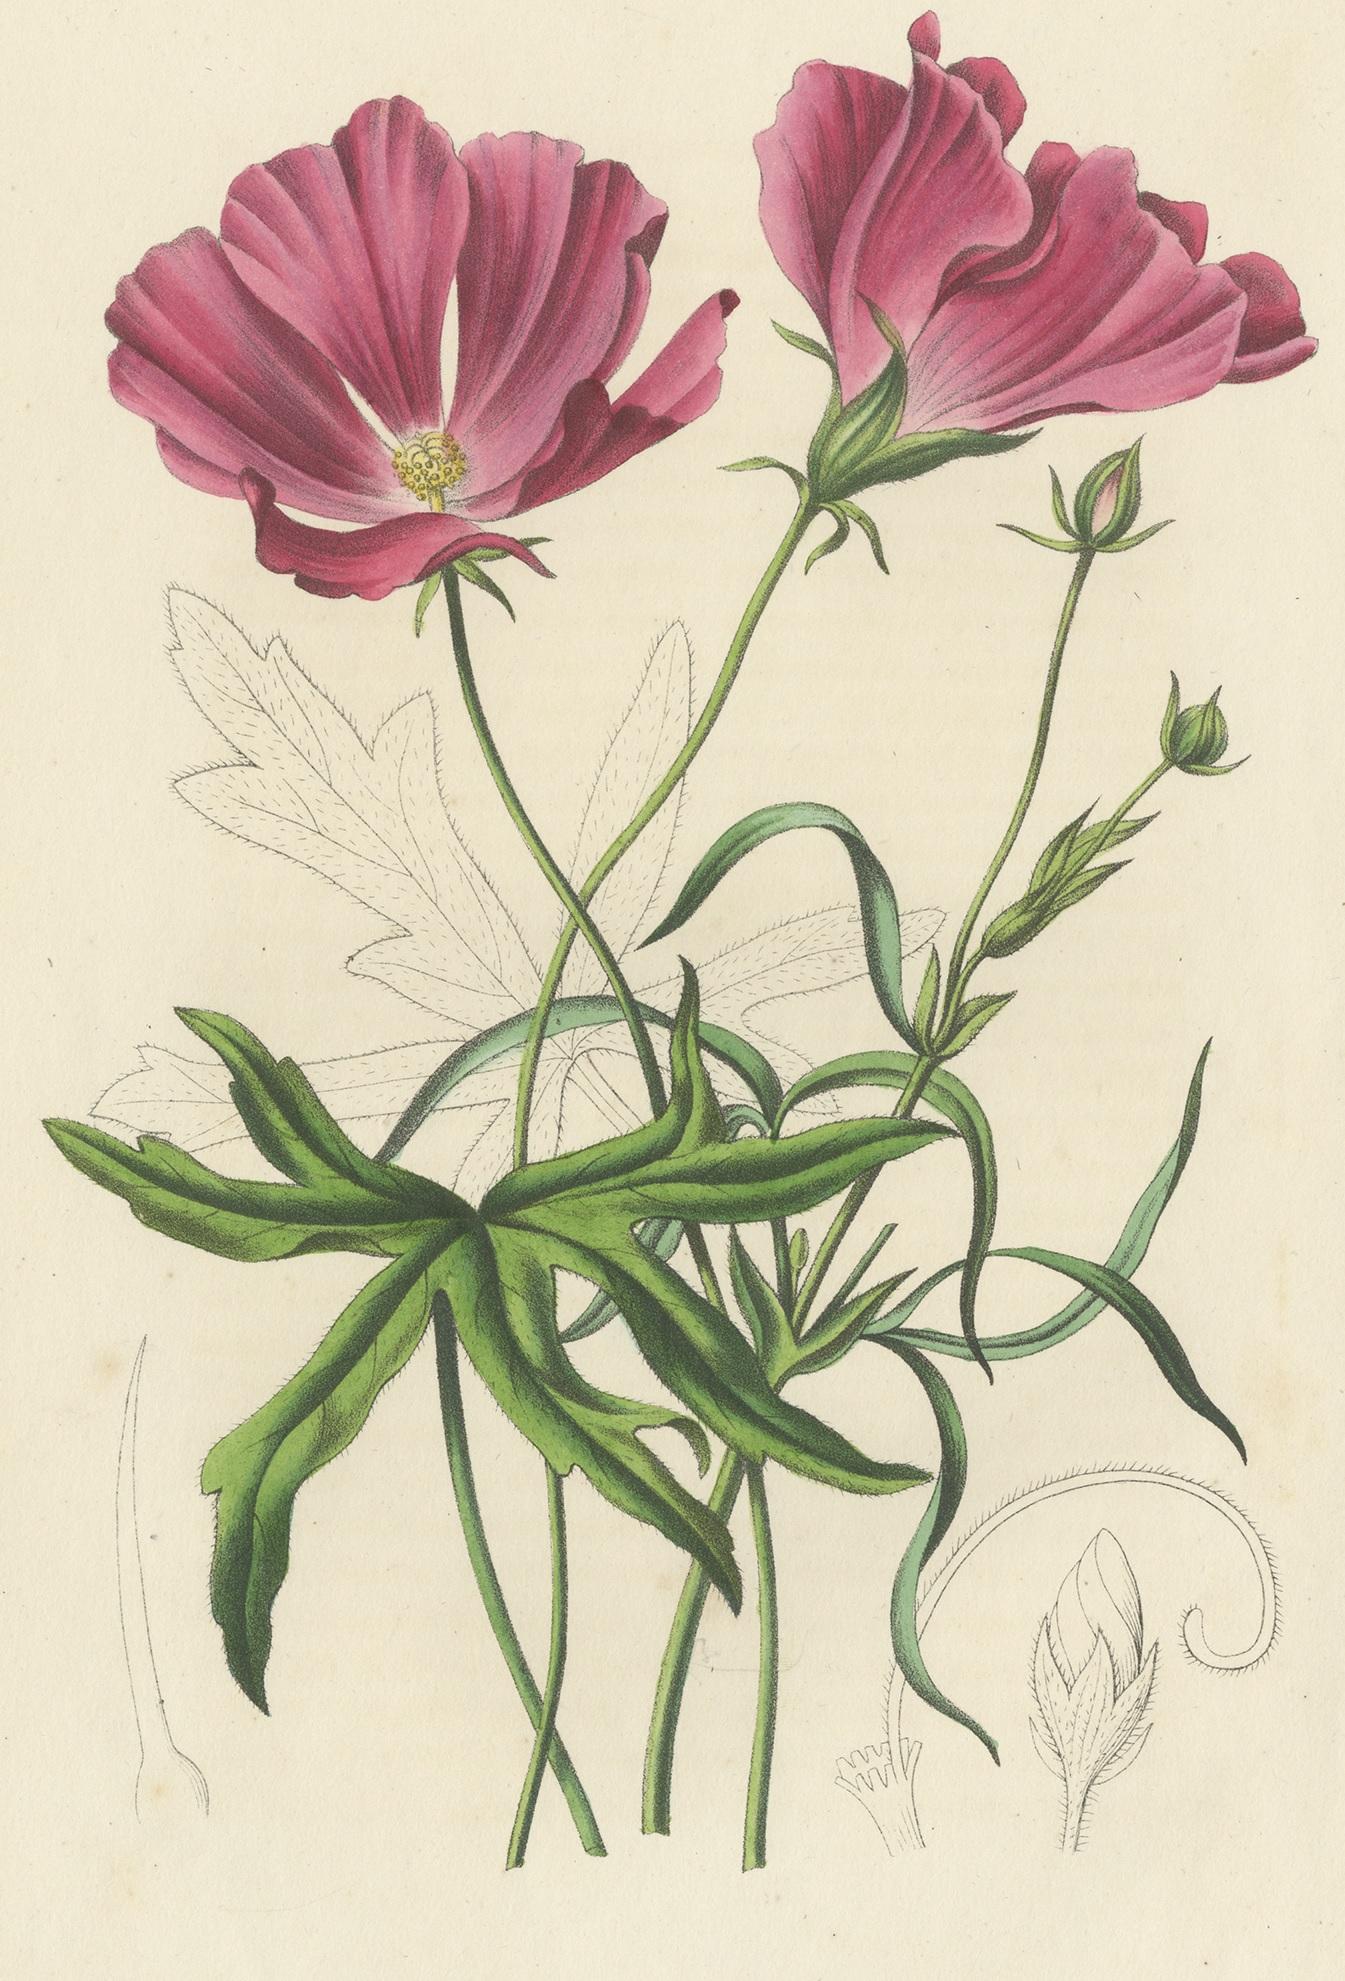 Antique print titled 'Nuttalia Grandiflora'. Botany print of the large-flowered nuttalia. This print originates from volume 3 of 'Annales de la Société Royale d'Agriculture et de Botanique (..)' published in 1847.